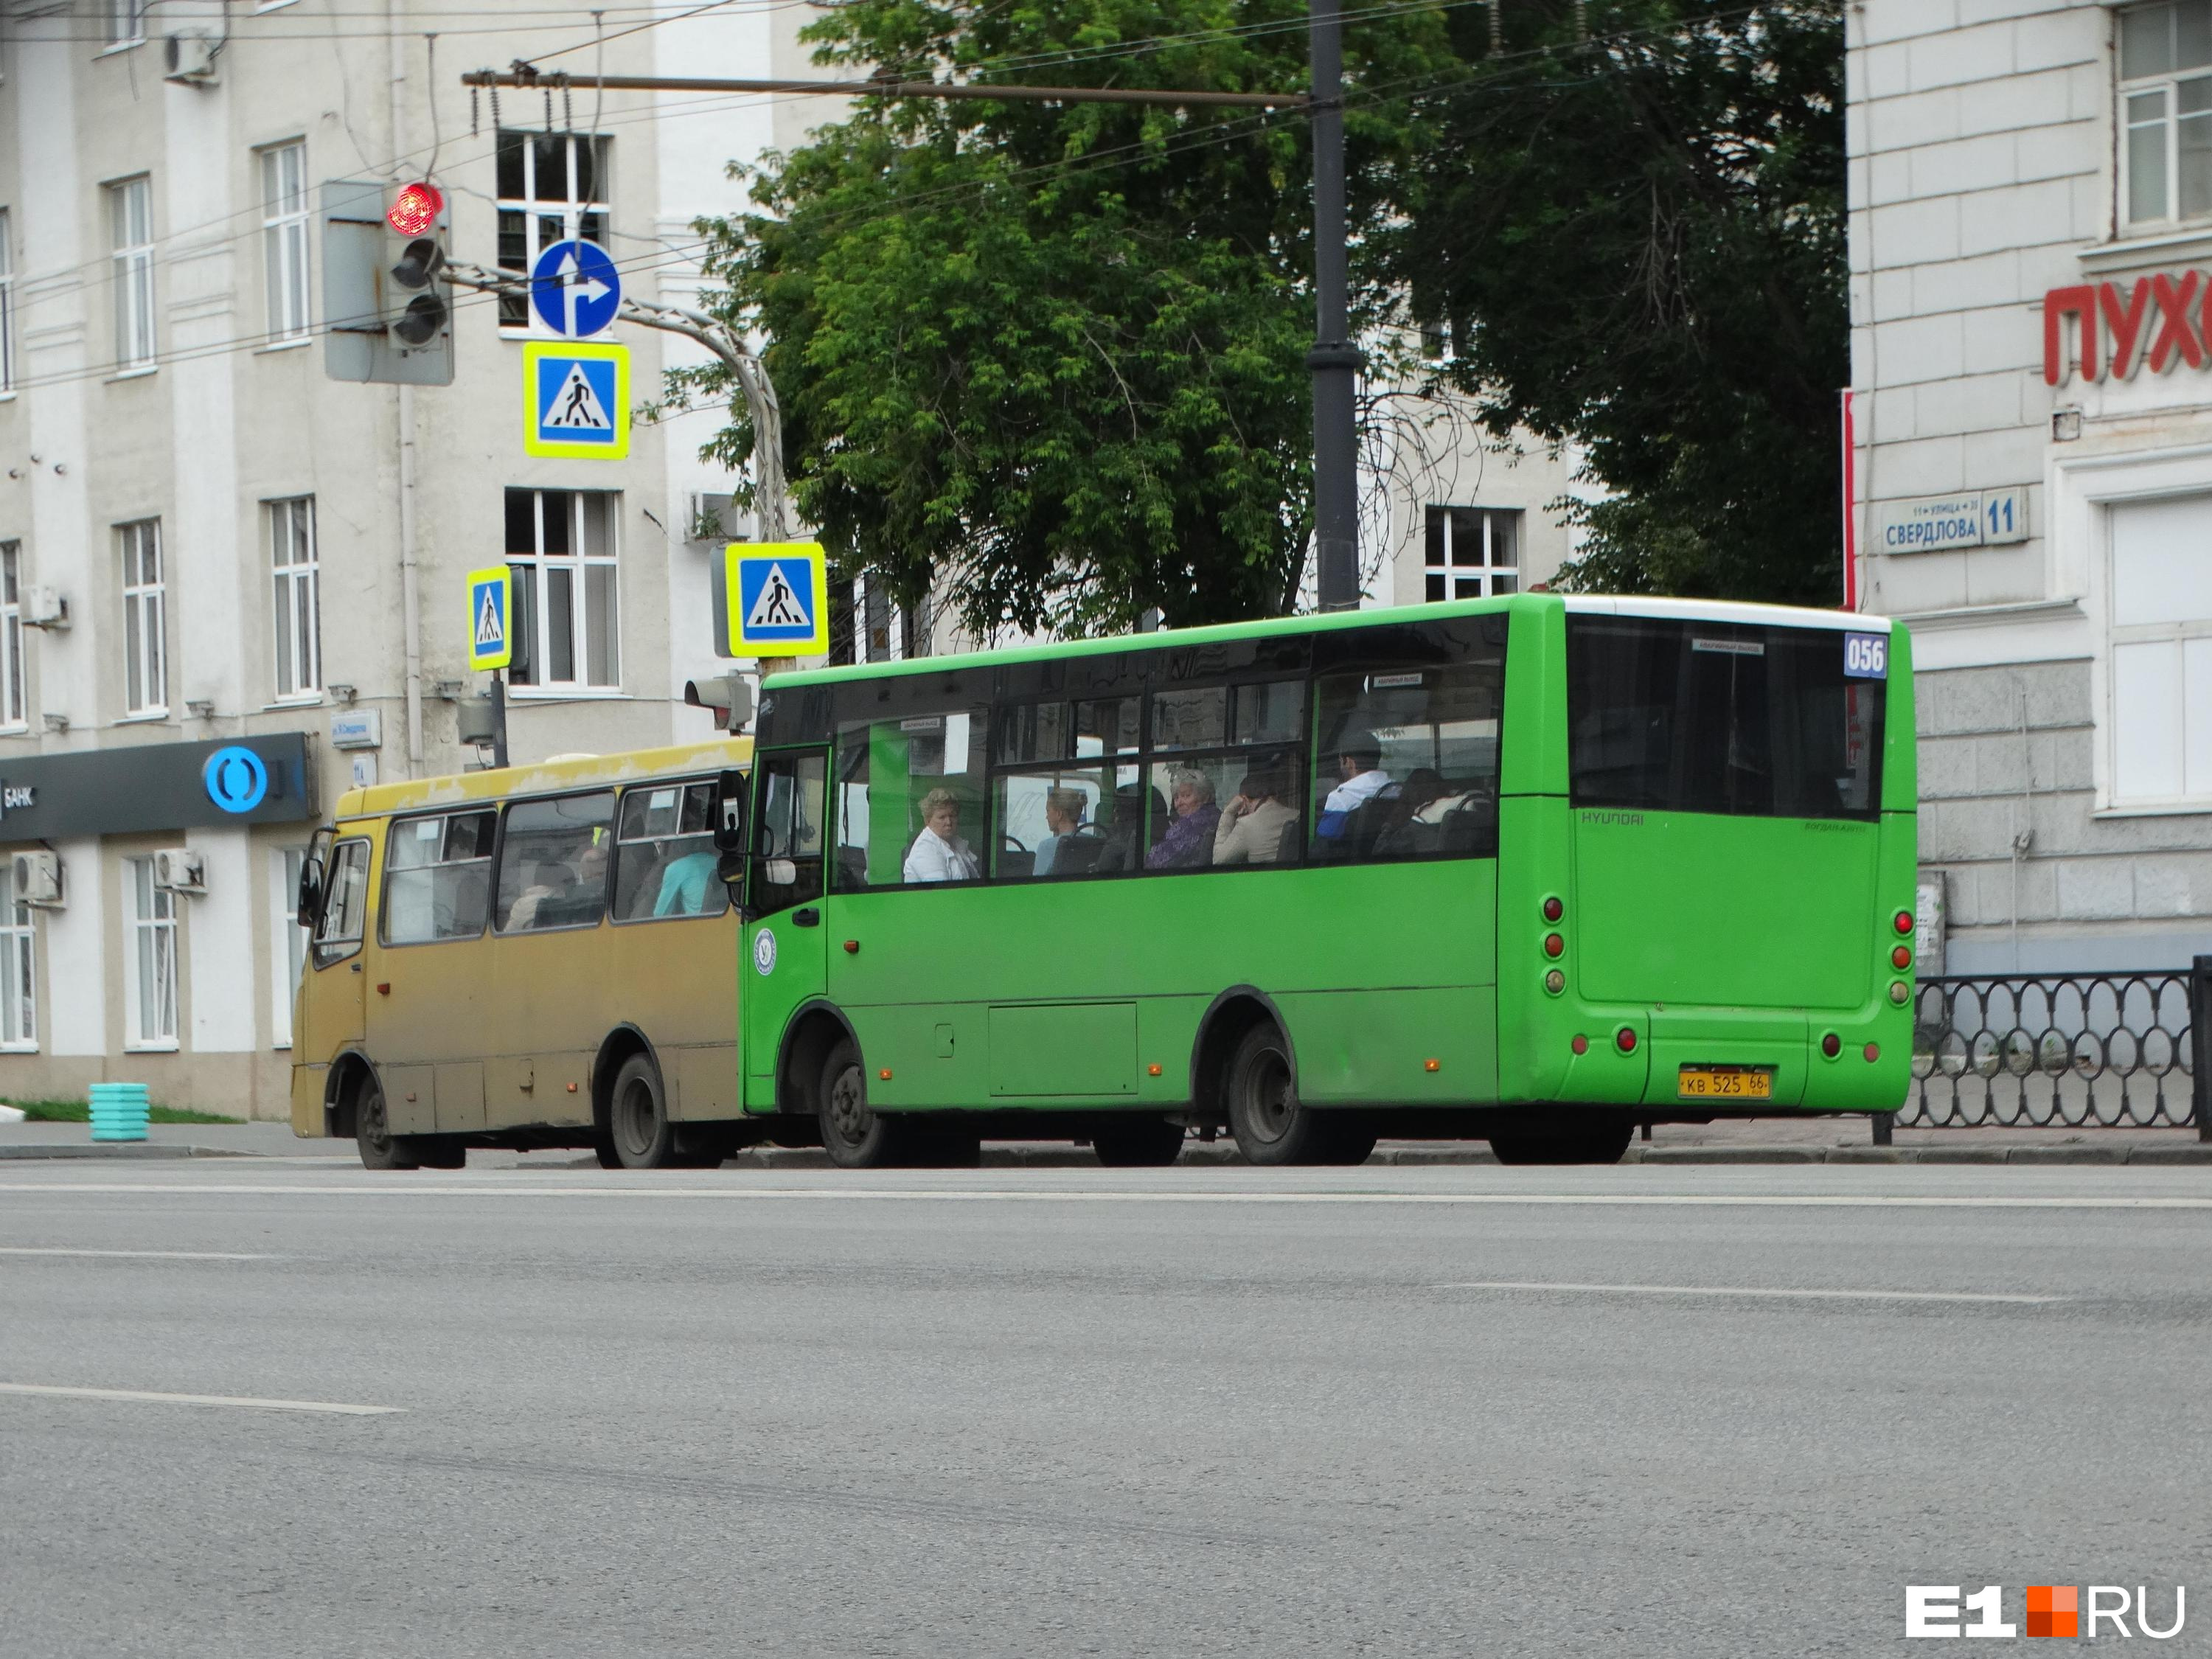 Теперь официально! В Екатеринбурге общественный транспорт будет работать по-новому